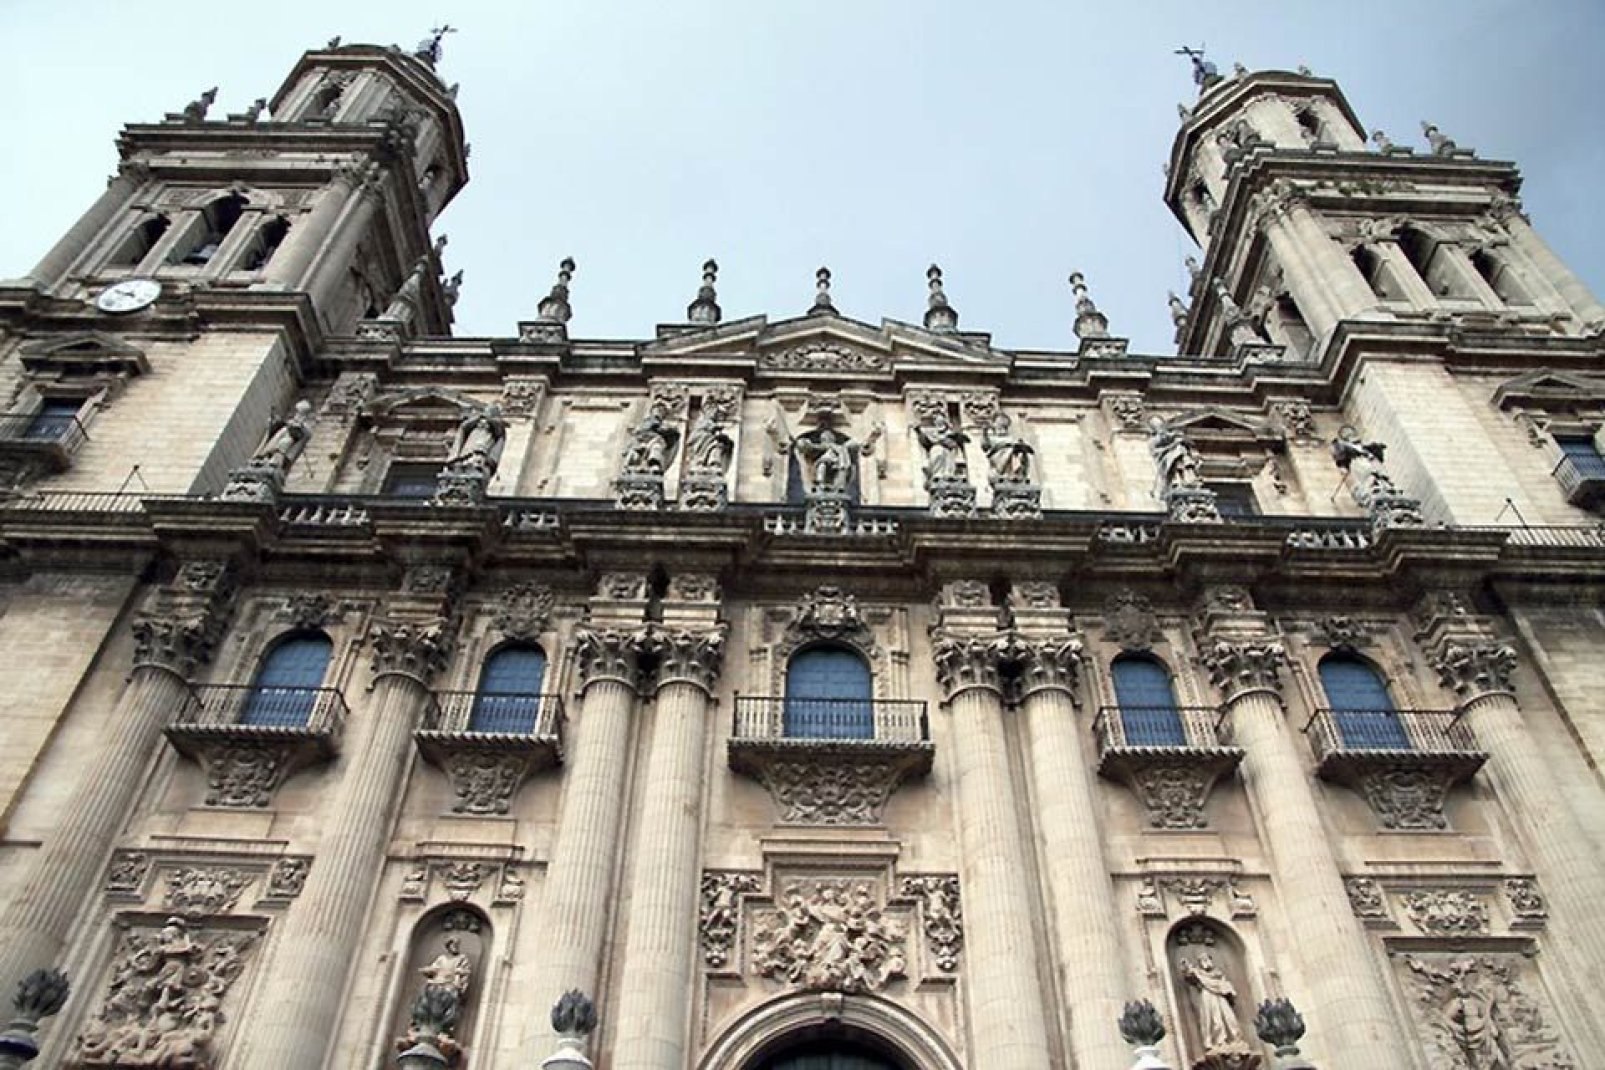 Questa cattedrale è davvero impressionante per via delle sue torri alte 26 metri. All'interno vi si trova un organo risalente al XVIII secolo.